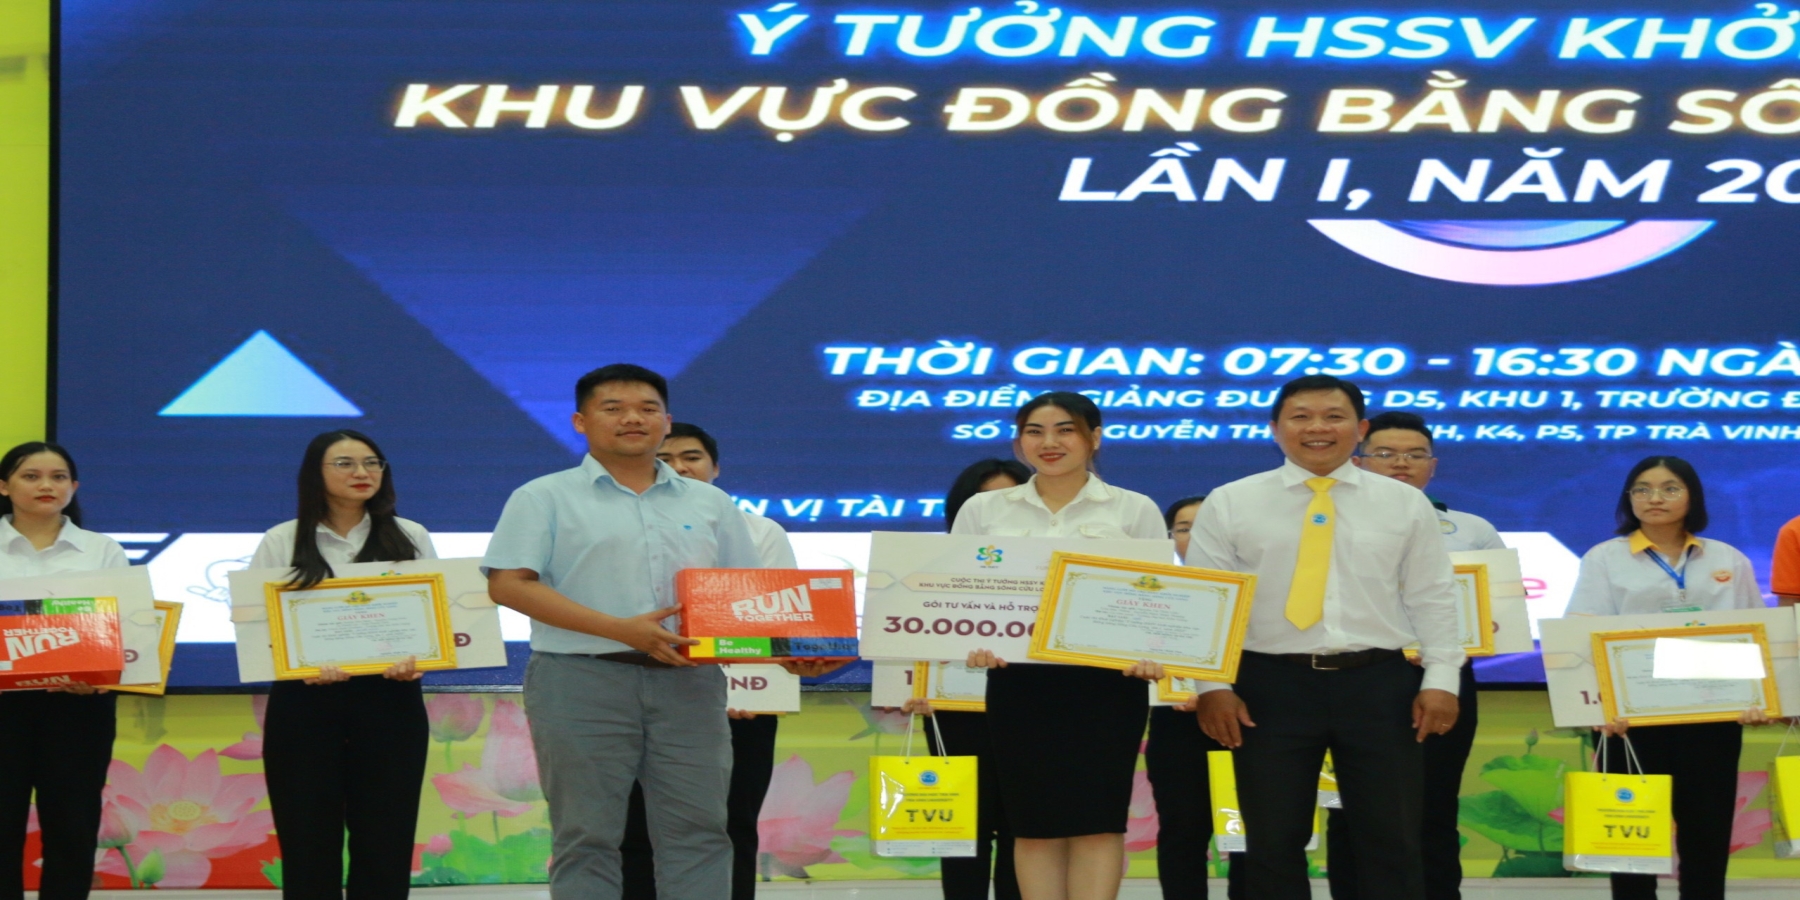 Sinh viên Trường Đại học Kiên Giang đã đạt giải Nhất tại cuộc thi Ý tưởng học sinh, sinh viên khởi nghiệp khu vực Đồng bằng Sông Cửu Long 